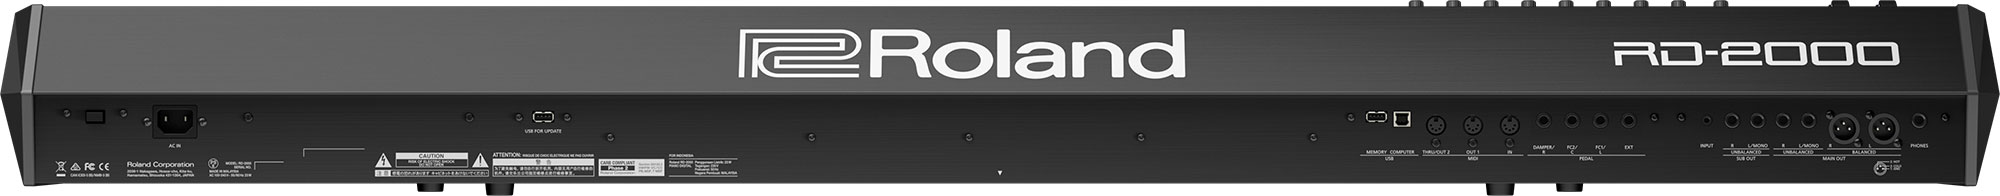 Roland RD-2000.